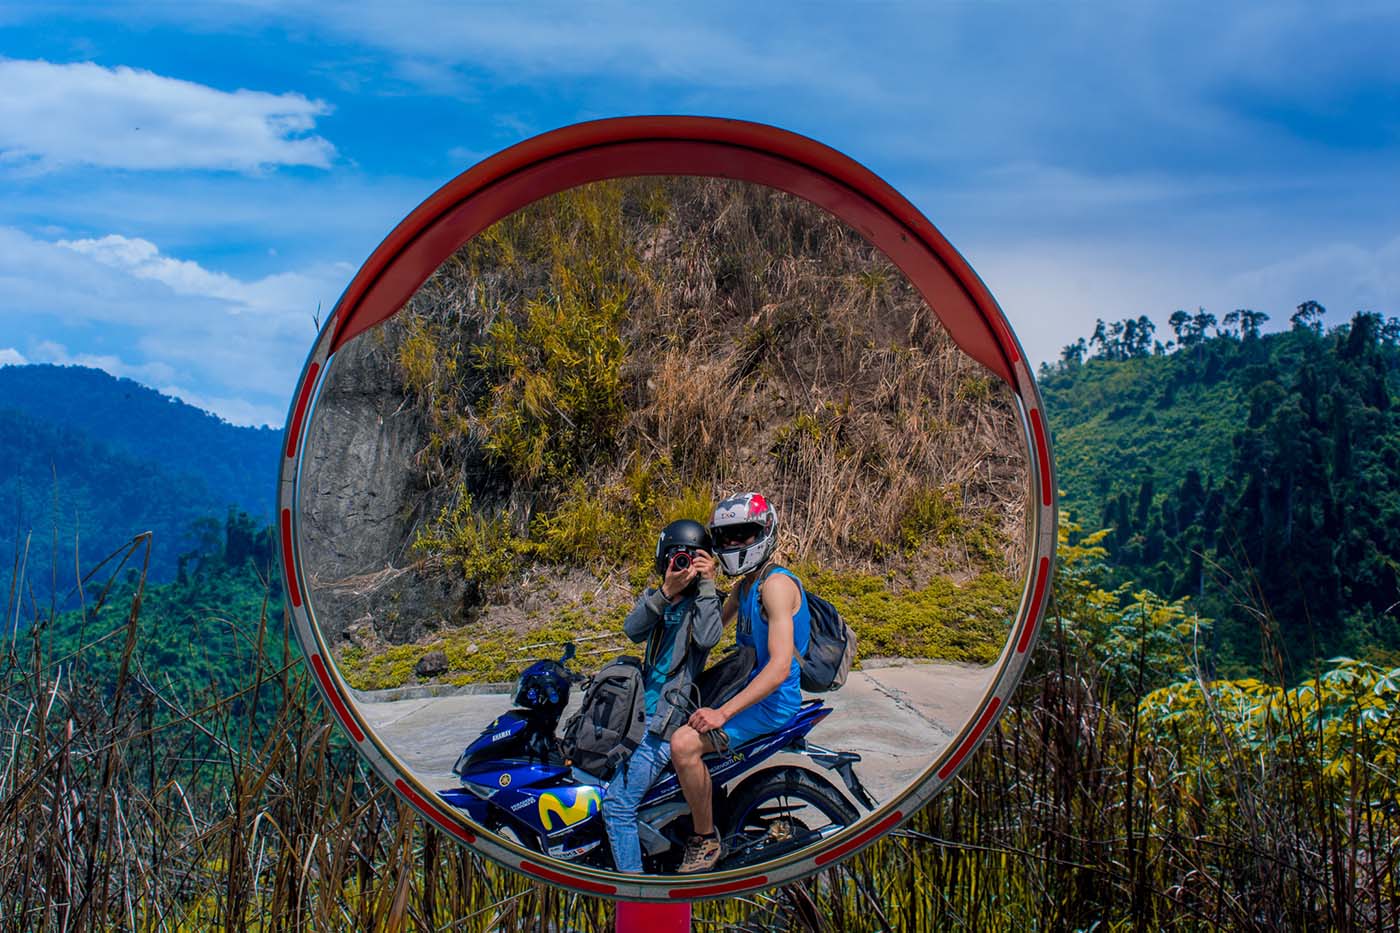 Motorbike to Da Nang